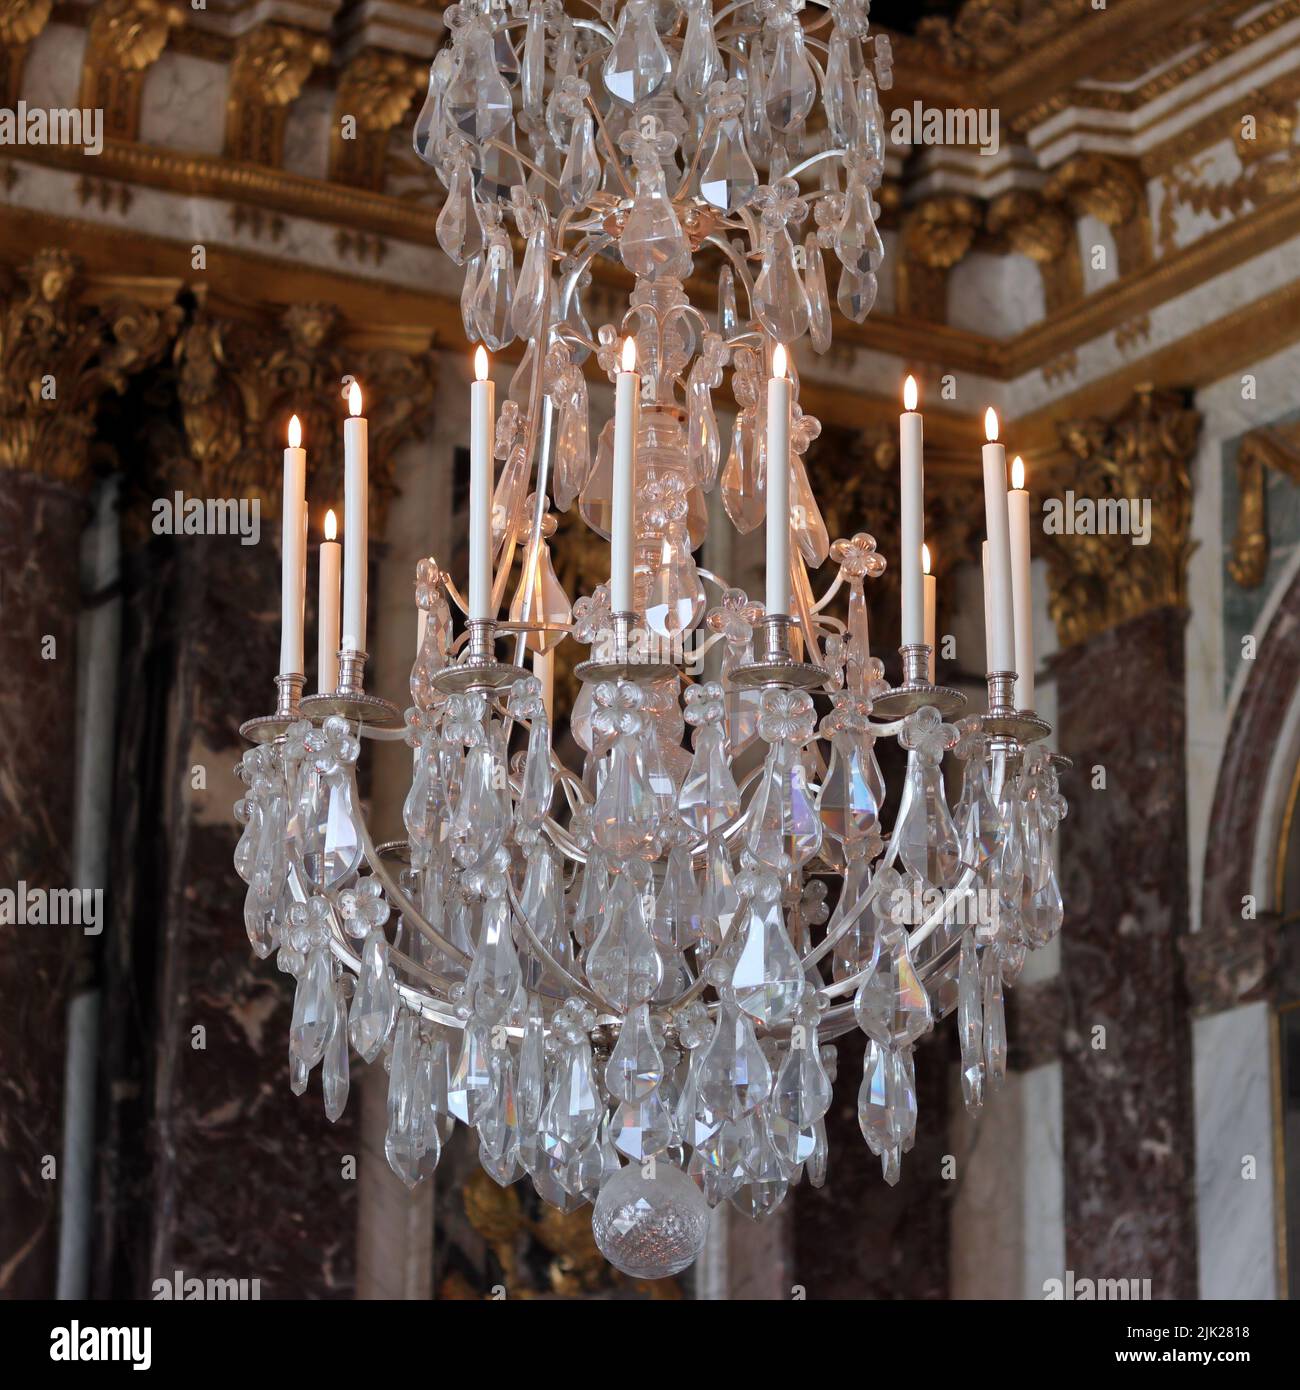 VERSAILLES / FRANCIA - 16 giugno 2019: Candelabro presso la Sala degli specchi del Palazzo di Versailles, Reggia di Versailles, vicino a Parigi, Francia Foto Stock